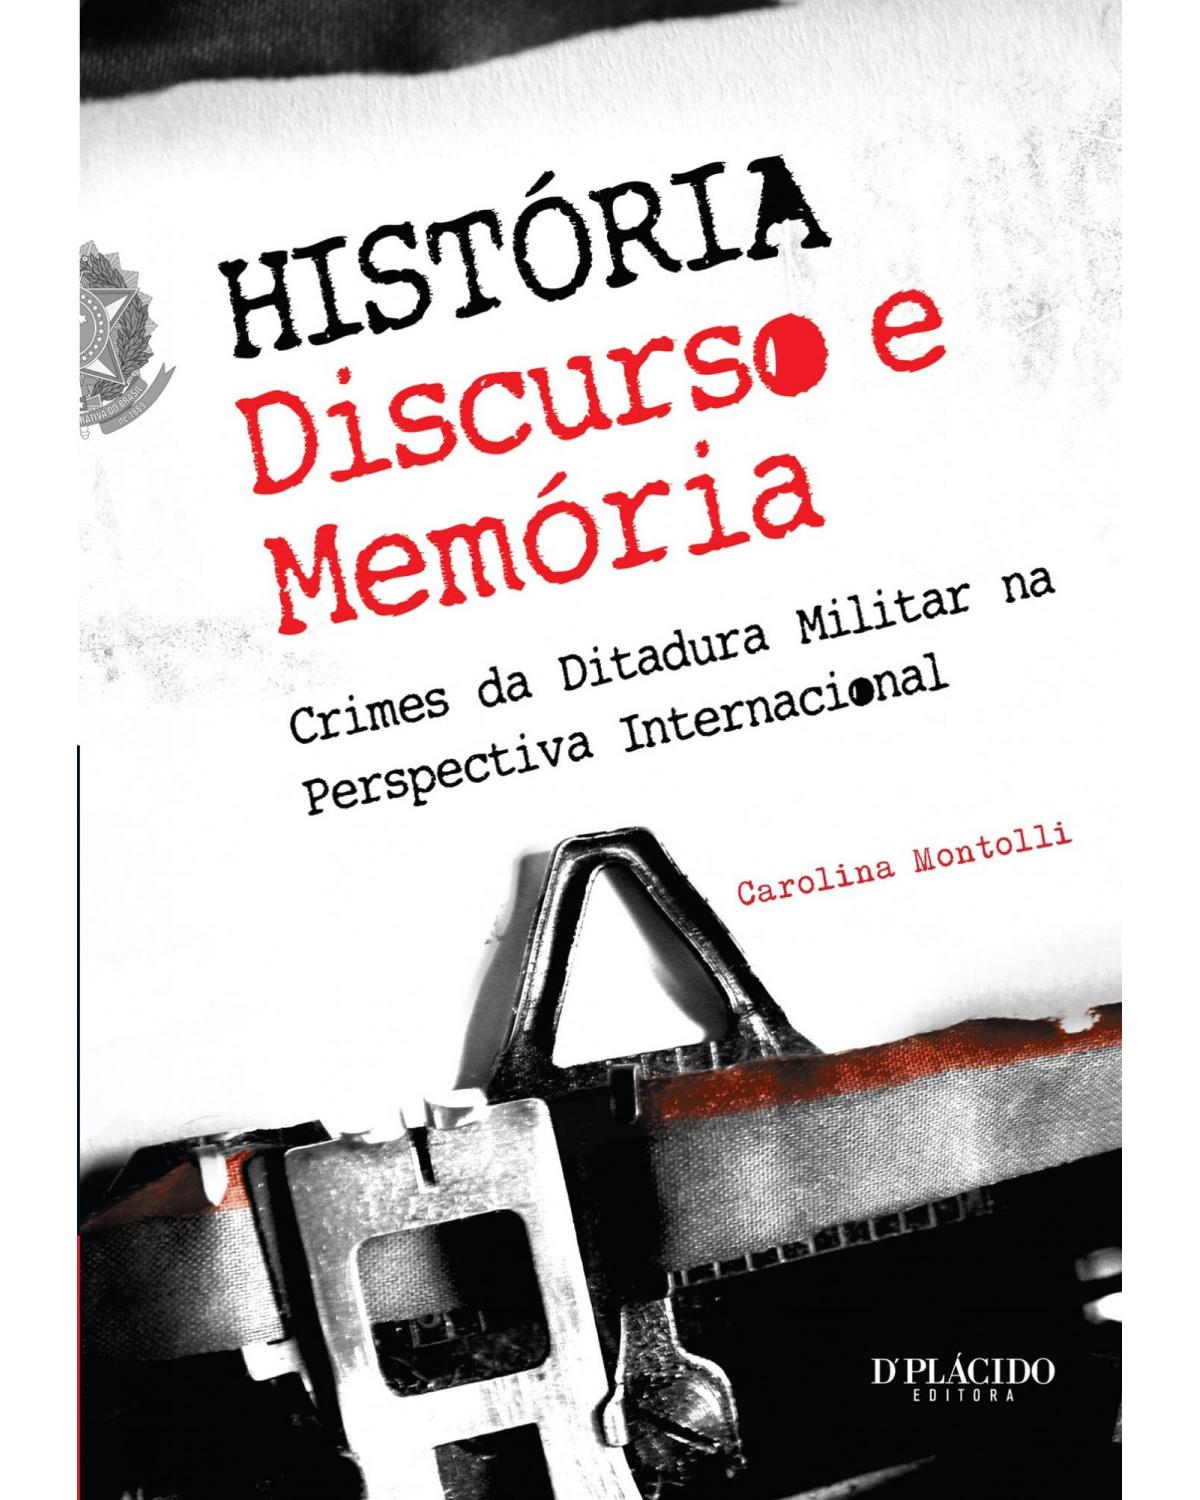 História, discurso e memória: crimes da ditadura militar na perspectiva internacional - 1ª Edição | 2013